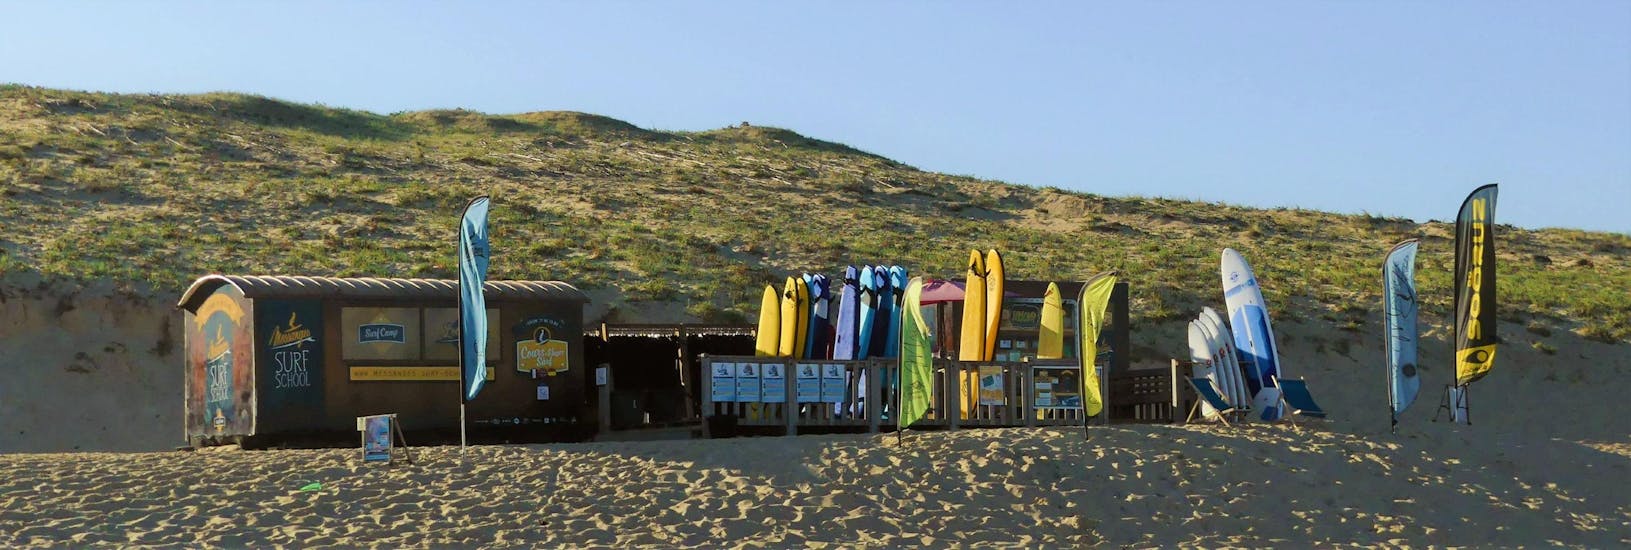 Le local de Messanges Surf School sur la plage Sud de Messanges où se déroulent les cours de surf enfants (6-8 ans).